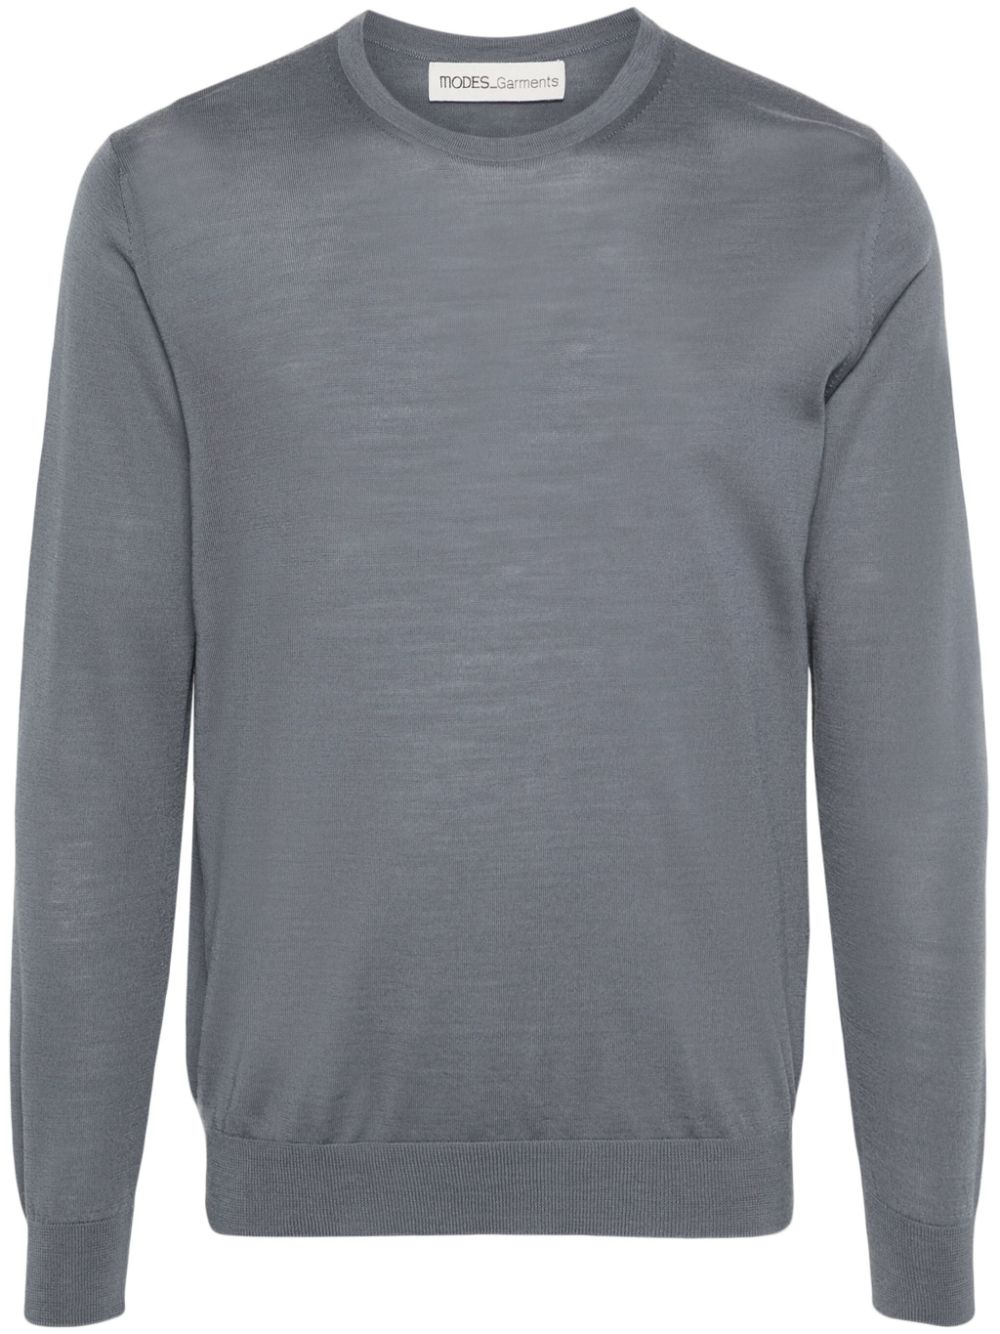 Modes Garments Fine-knit Merino Wool Jumper In Grey